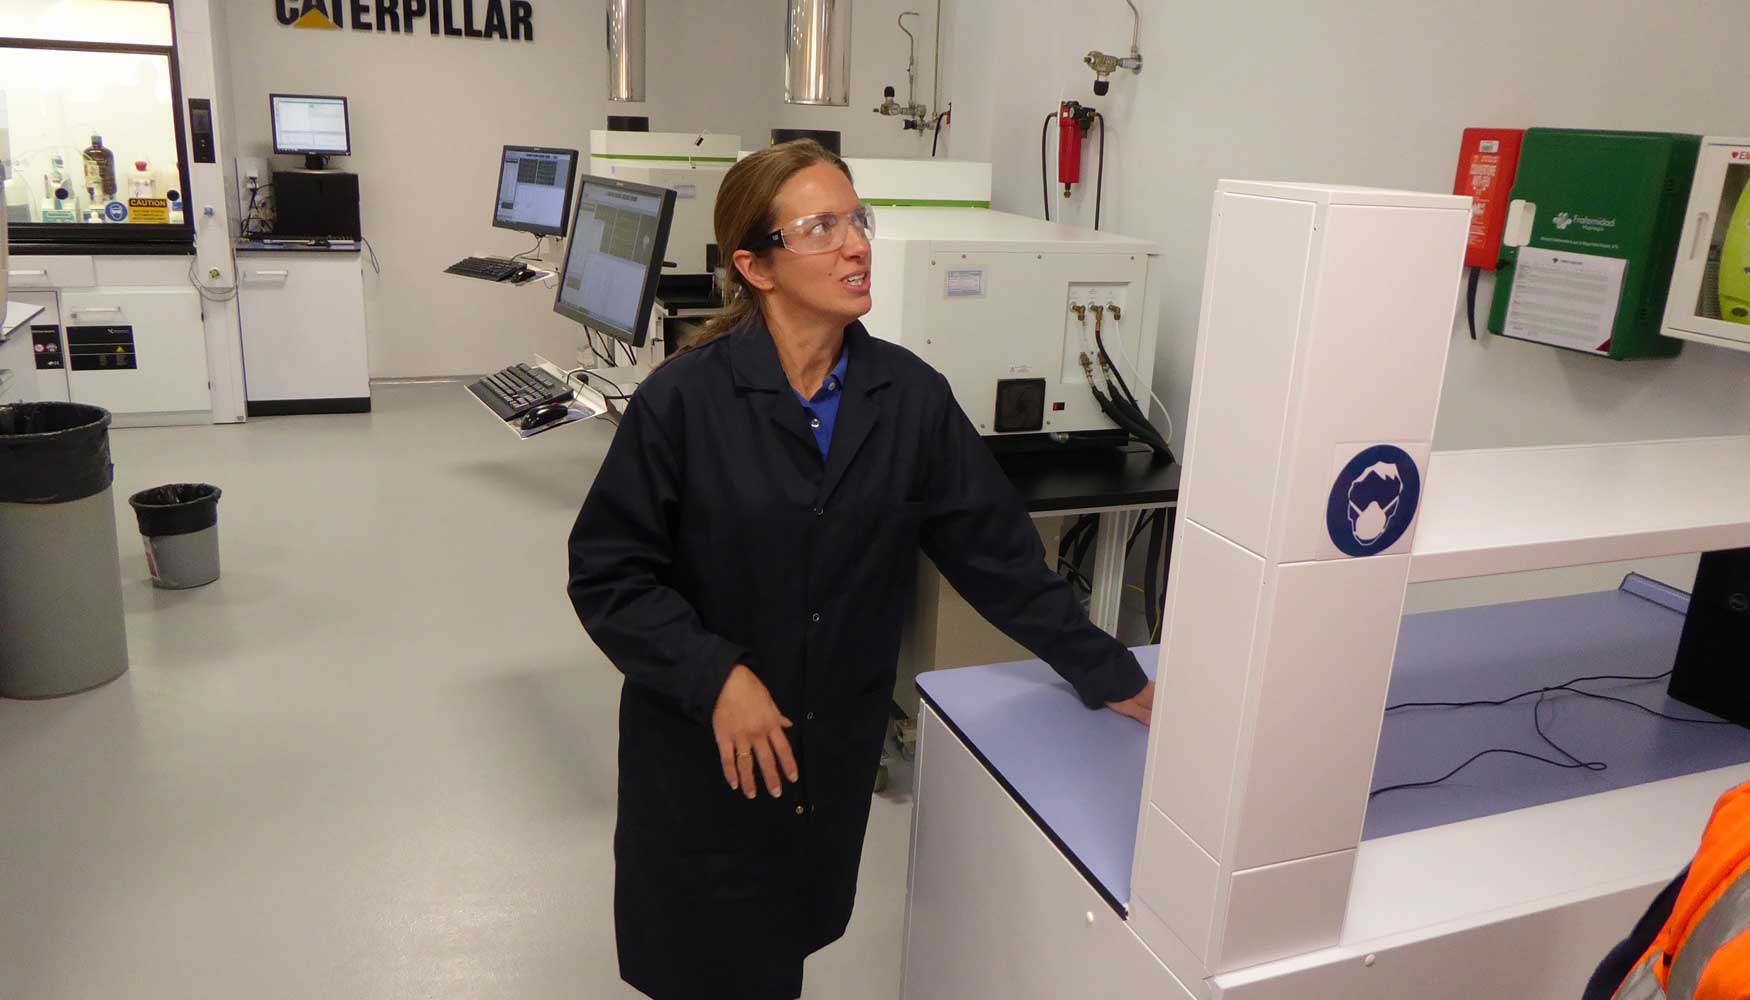 Blanca Hernndez, supervisora del laboratorio de Caterpillar en Mlaga, present el servicio S.O.S Fluid Analysis Lab